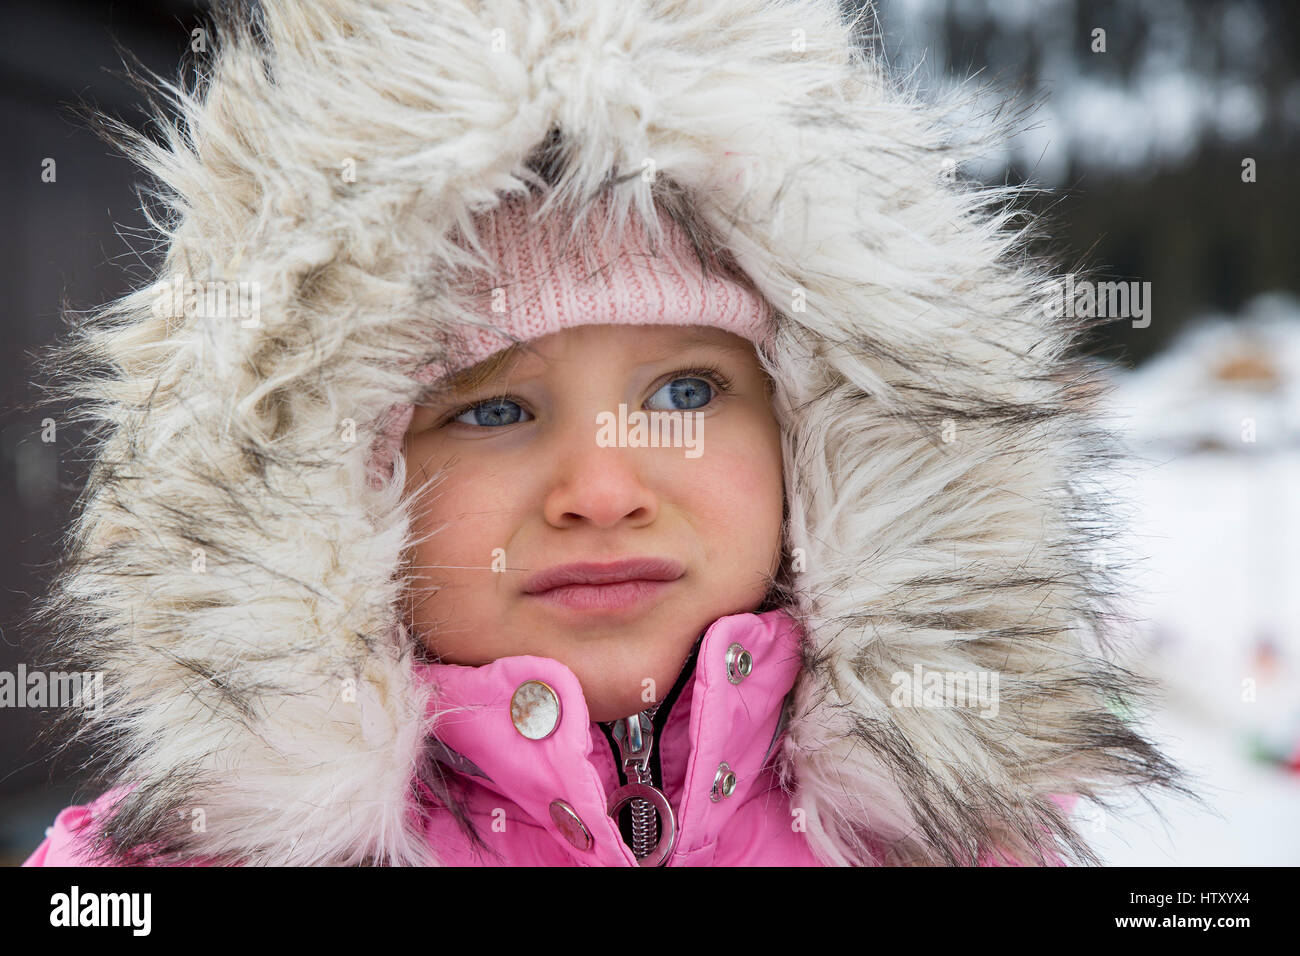 Portrait de petite fille habillée dans des vêtements d'hiver avec capuche à fourrure. Banque D'Images